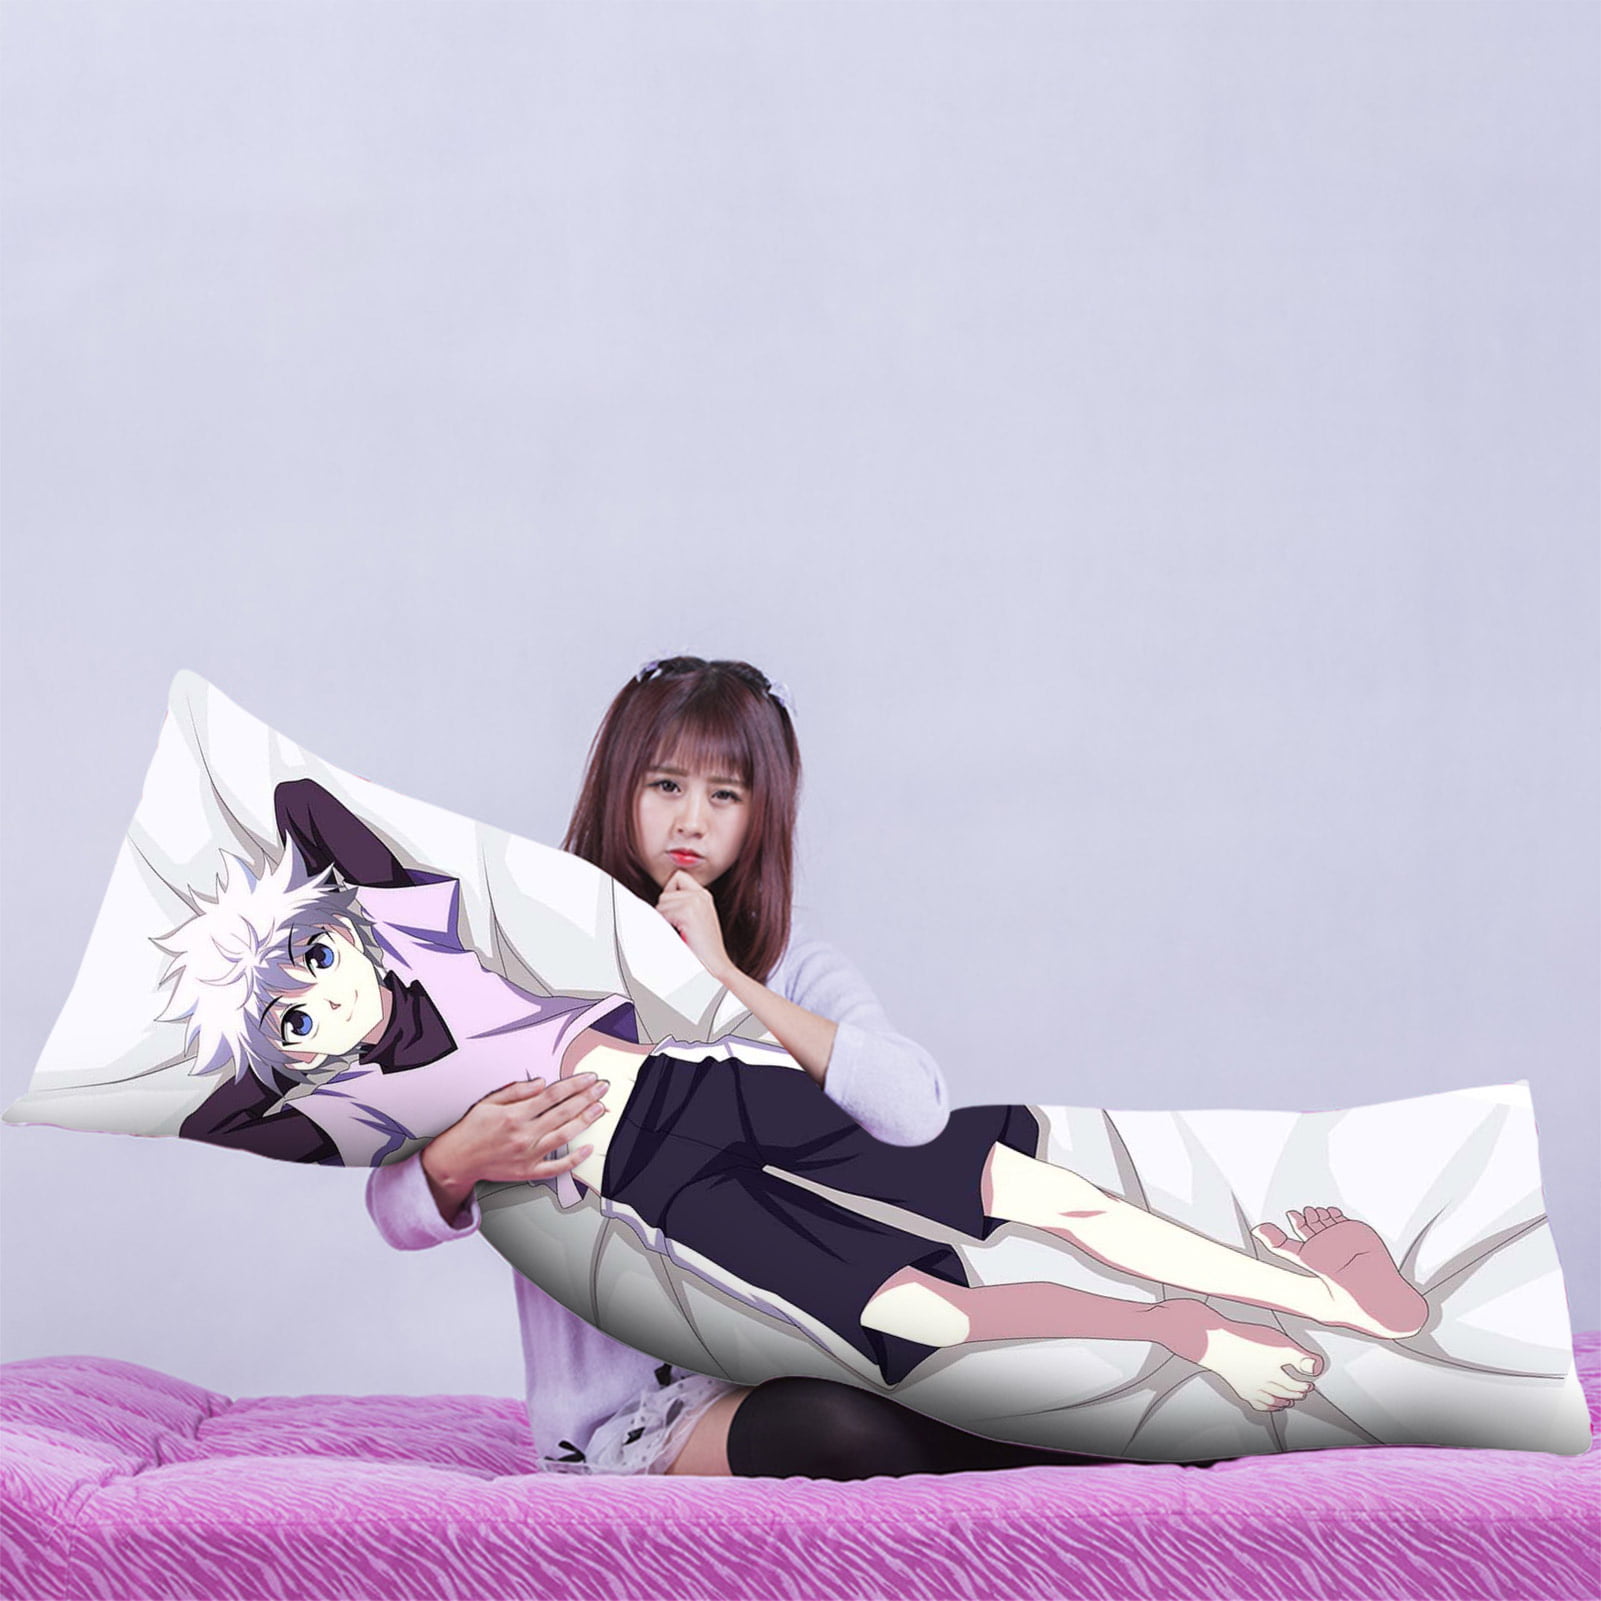 Anime Body Pillows  Anime Body Pillow Home  Pillow Body Hug Anime  Otaku Body  Pillow  Pillow  Aliexpress